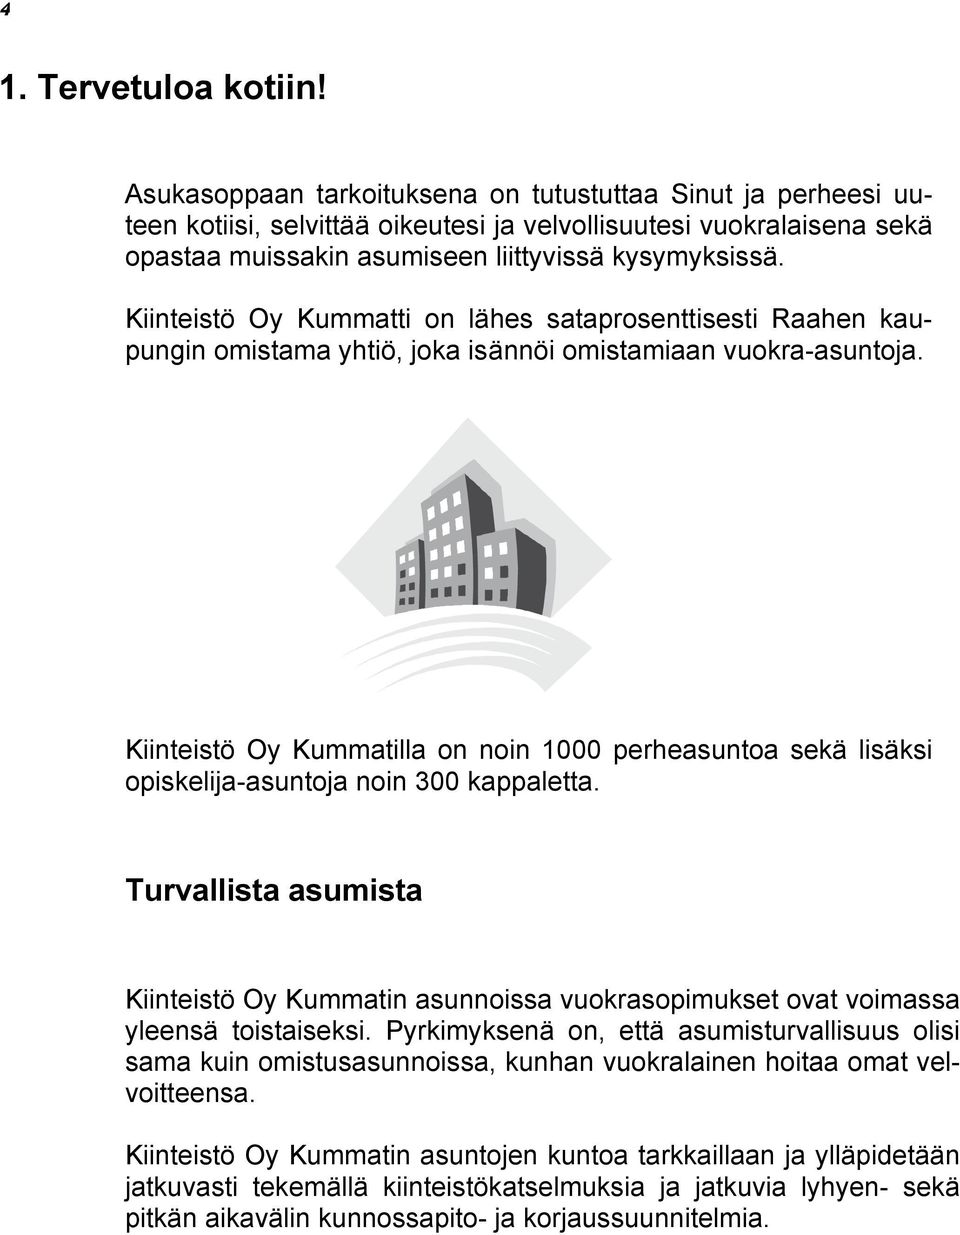 Kiinteistö Oy Kummatti on lähes sataprosenttisesti Raahen kaupungin omistama yhtiö, joka isännöi omistamiaan vuokra-asuntoja.